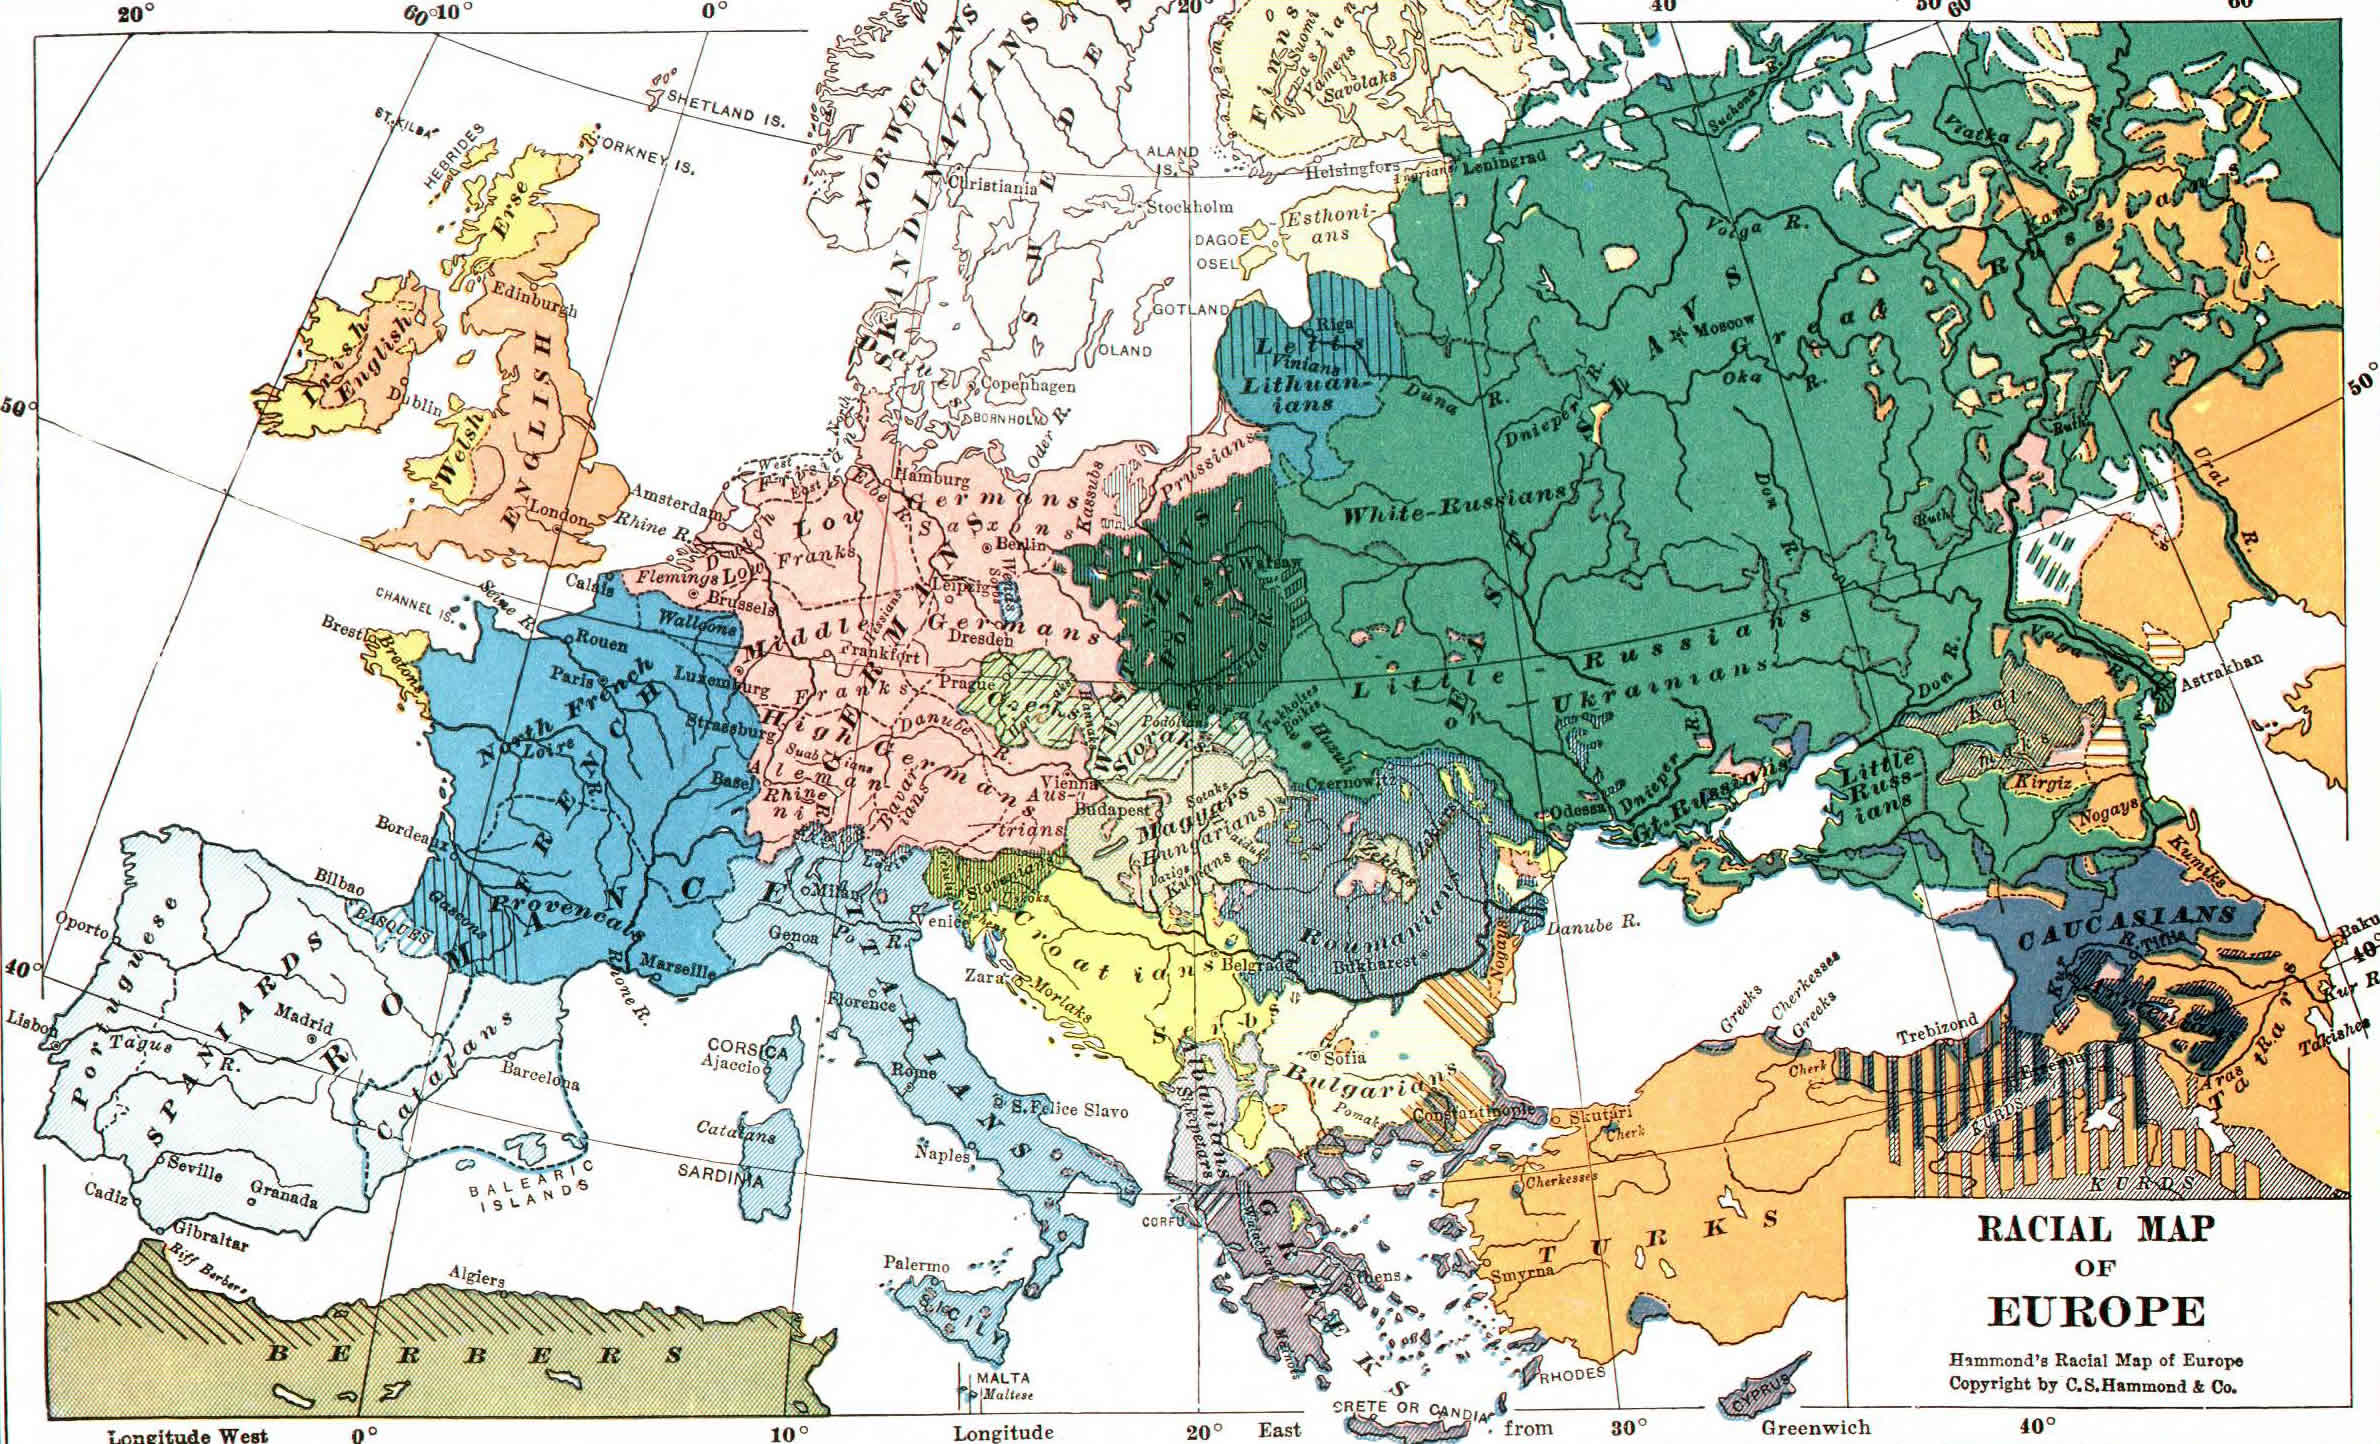 Europe Racial Map